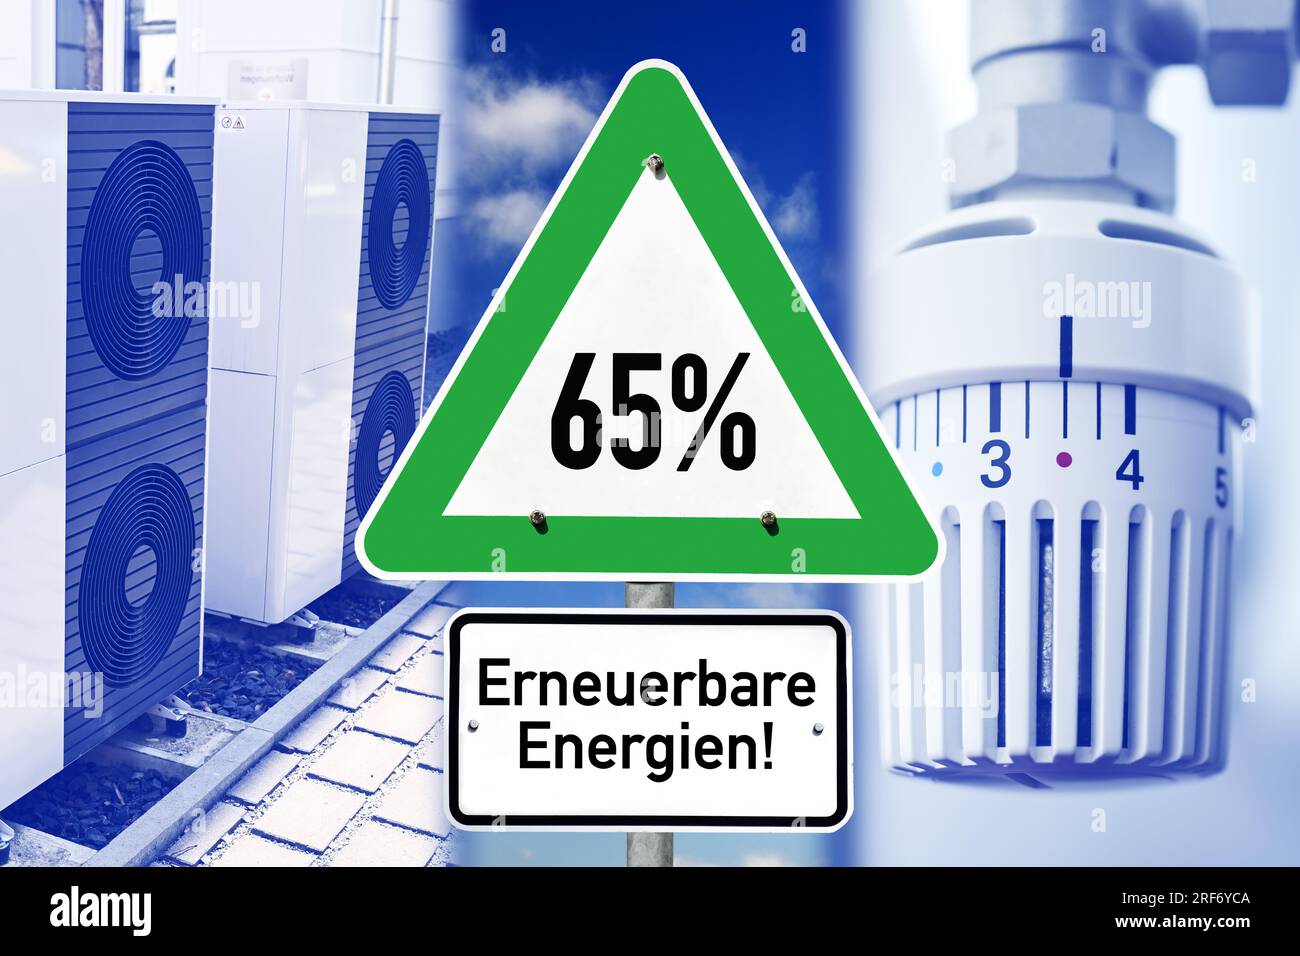 FOTOMONTAGE, Schild mit Aufschrift 65% erneuerbare Energien, Wärmepumpe und Heizungsthermostat Stock Photo